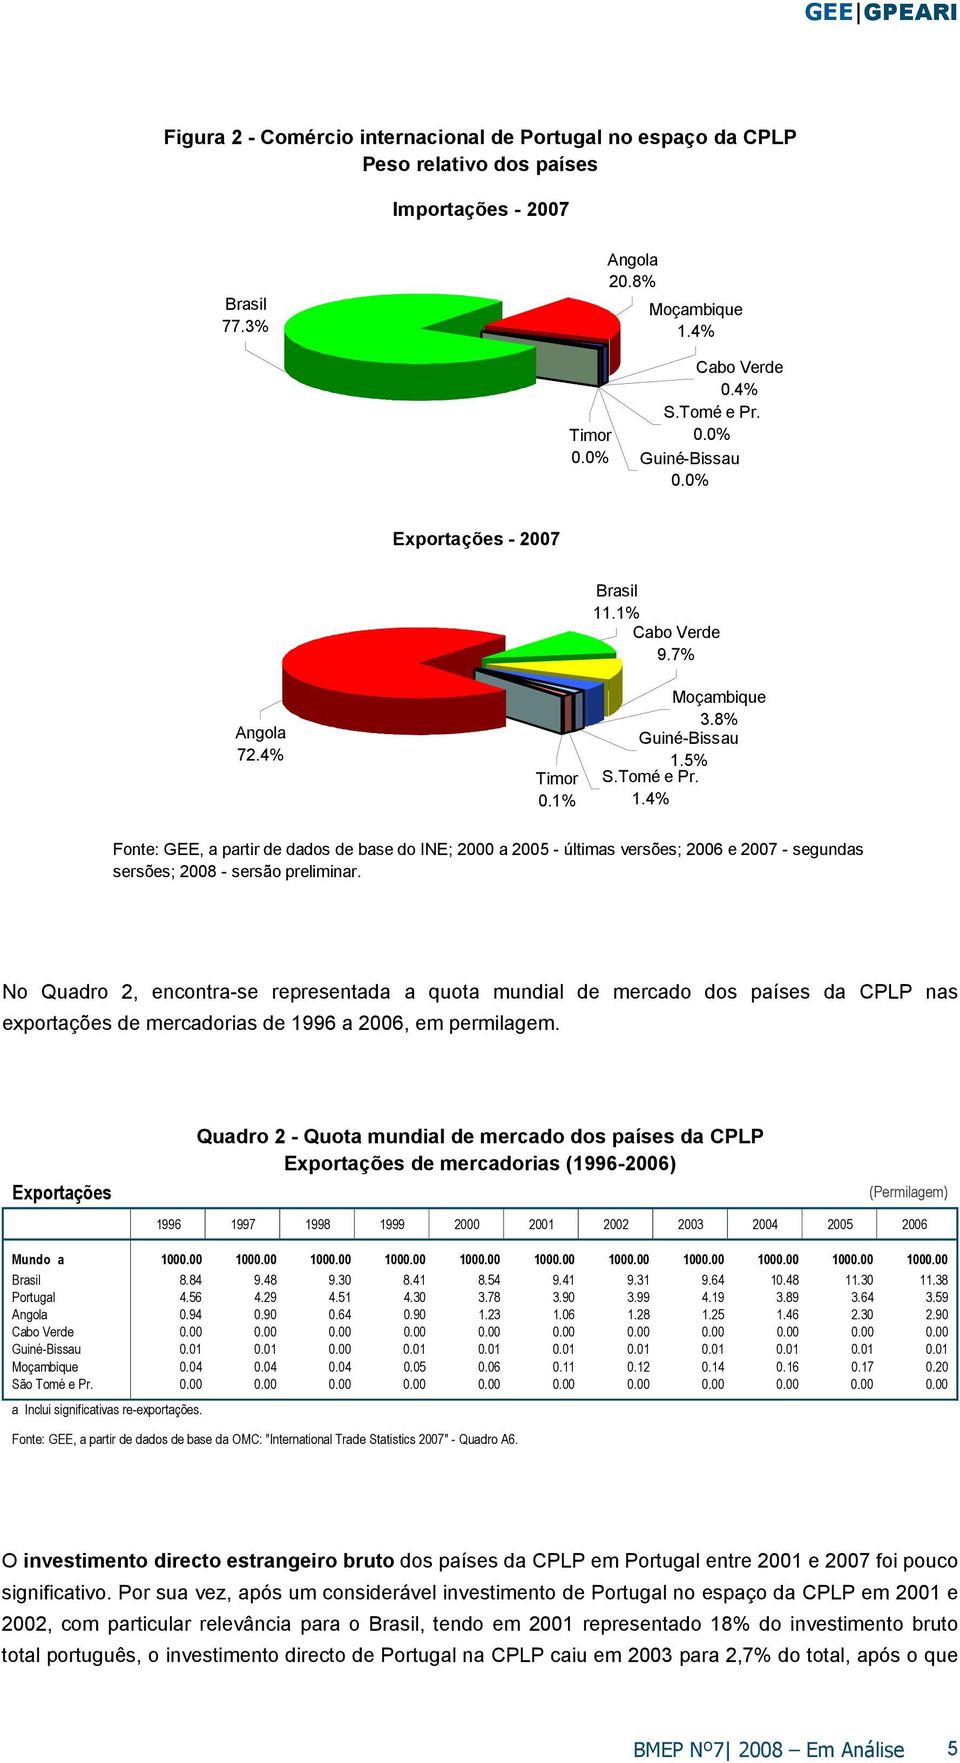 No Quadro 2, encontra-se representada a quota mundial de mercado dos países da CPLP nas exportações de mercadorias de 1996 a 2006, em permilagem.